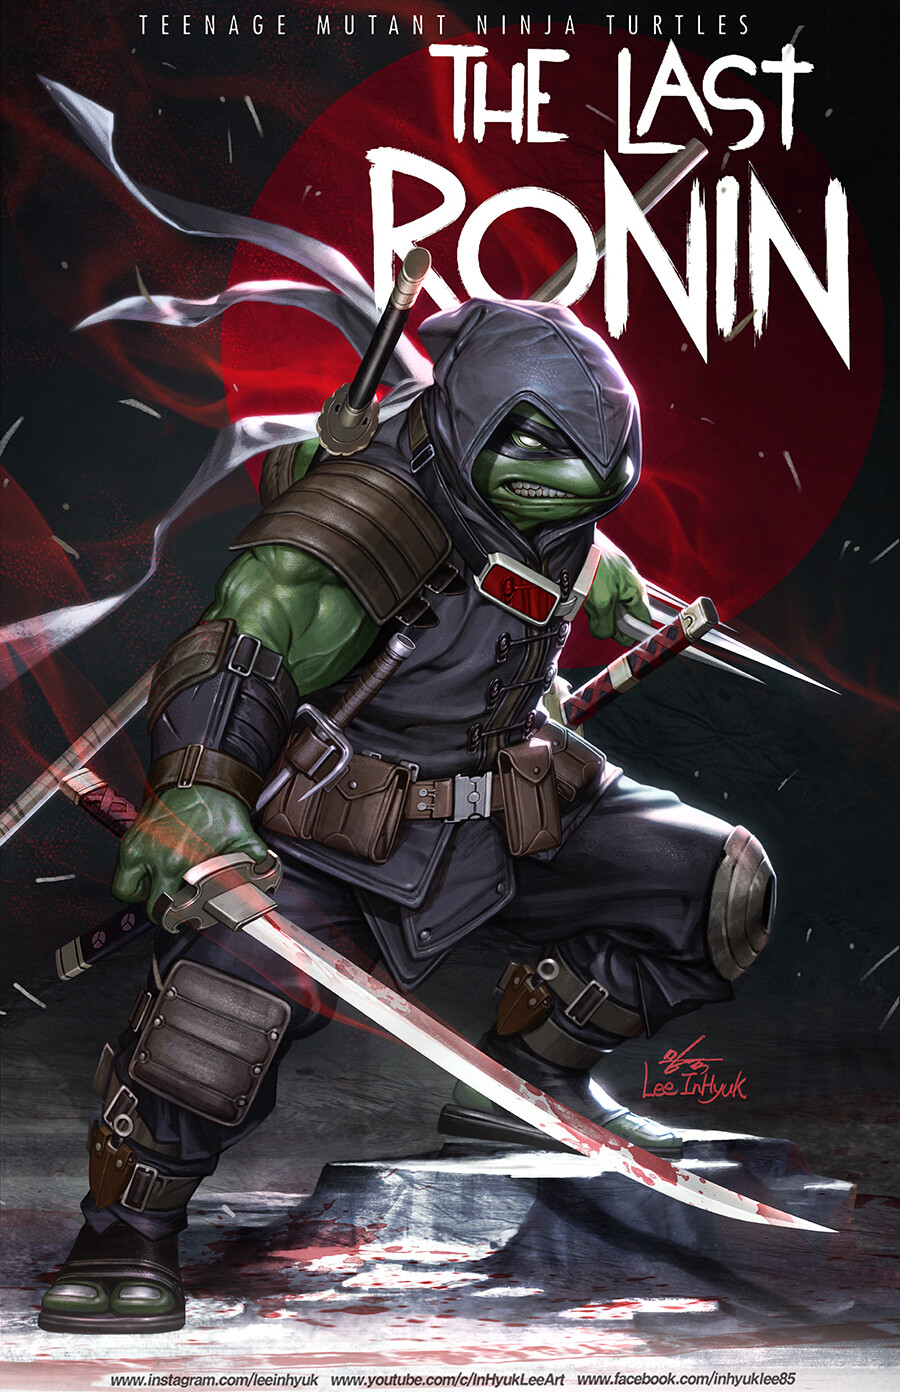  Teenage Mutant Ninja Turtles: The Last Ronin #2